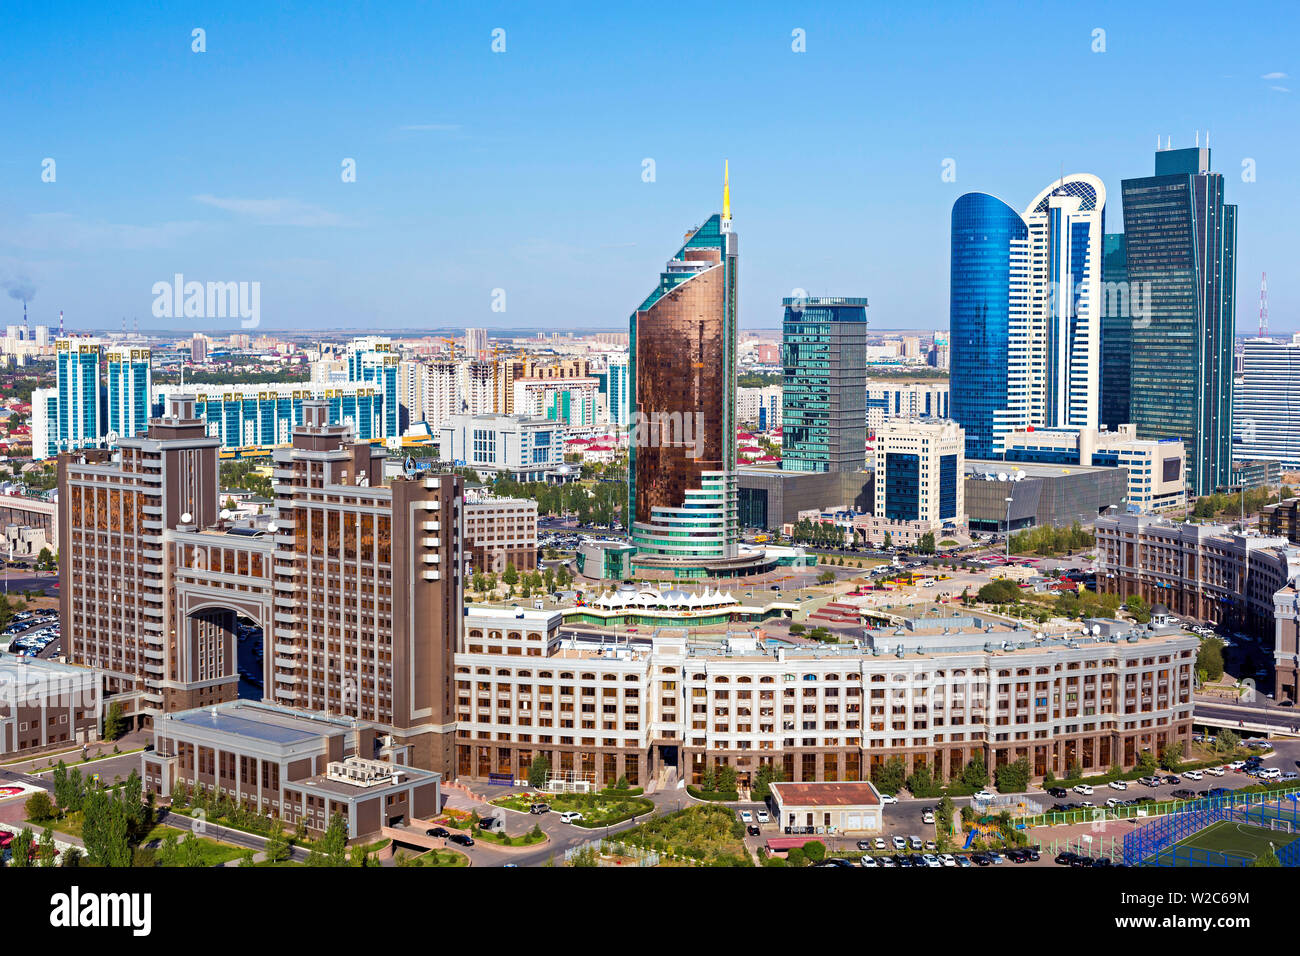 Asia central, Kazajstán, Astana, el centro de la ciudad y del distrito central de negocios Foto de stock